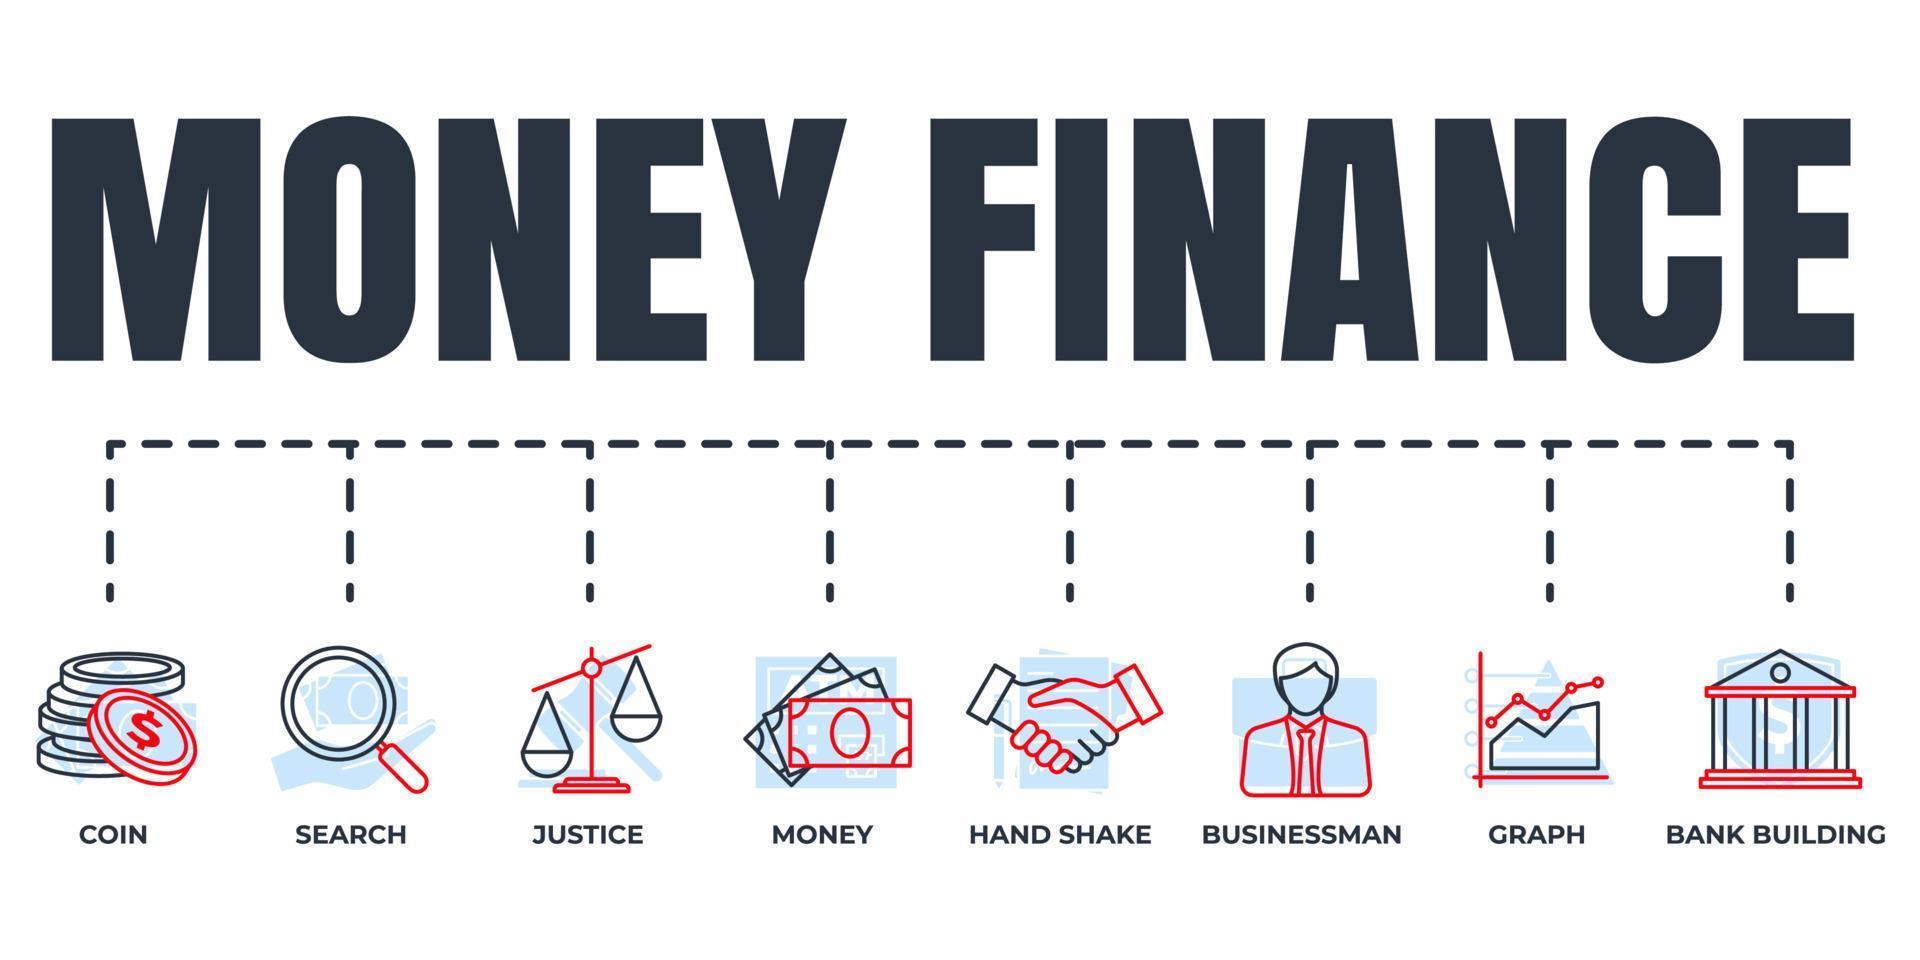 conjunto de ícones da web de banner de finanças. dinheiro, pesquisa, gráfico, empresário, construção de banco, justiça, moeda, conceito de ilustração vetorial de aperto de mão. vetor